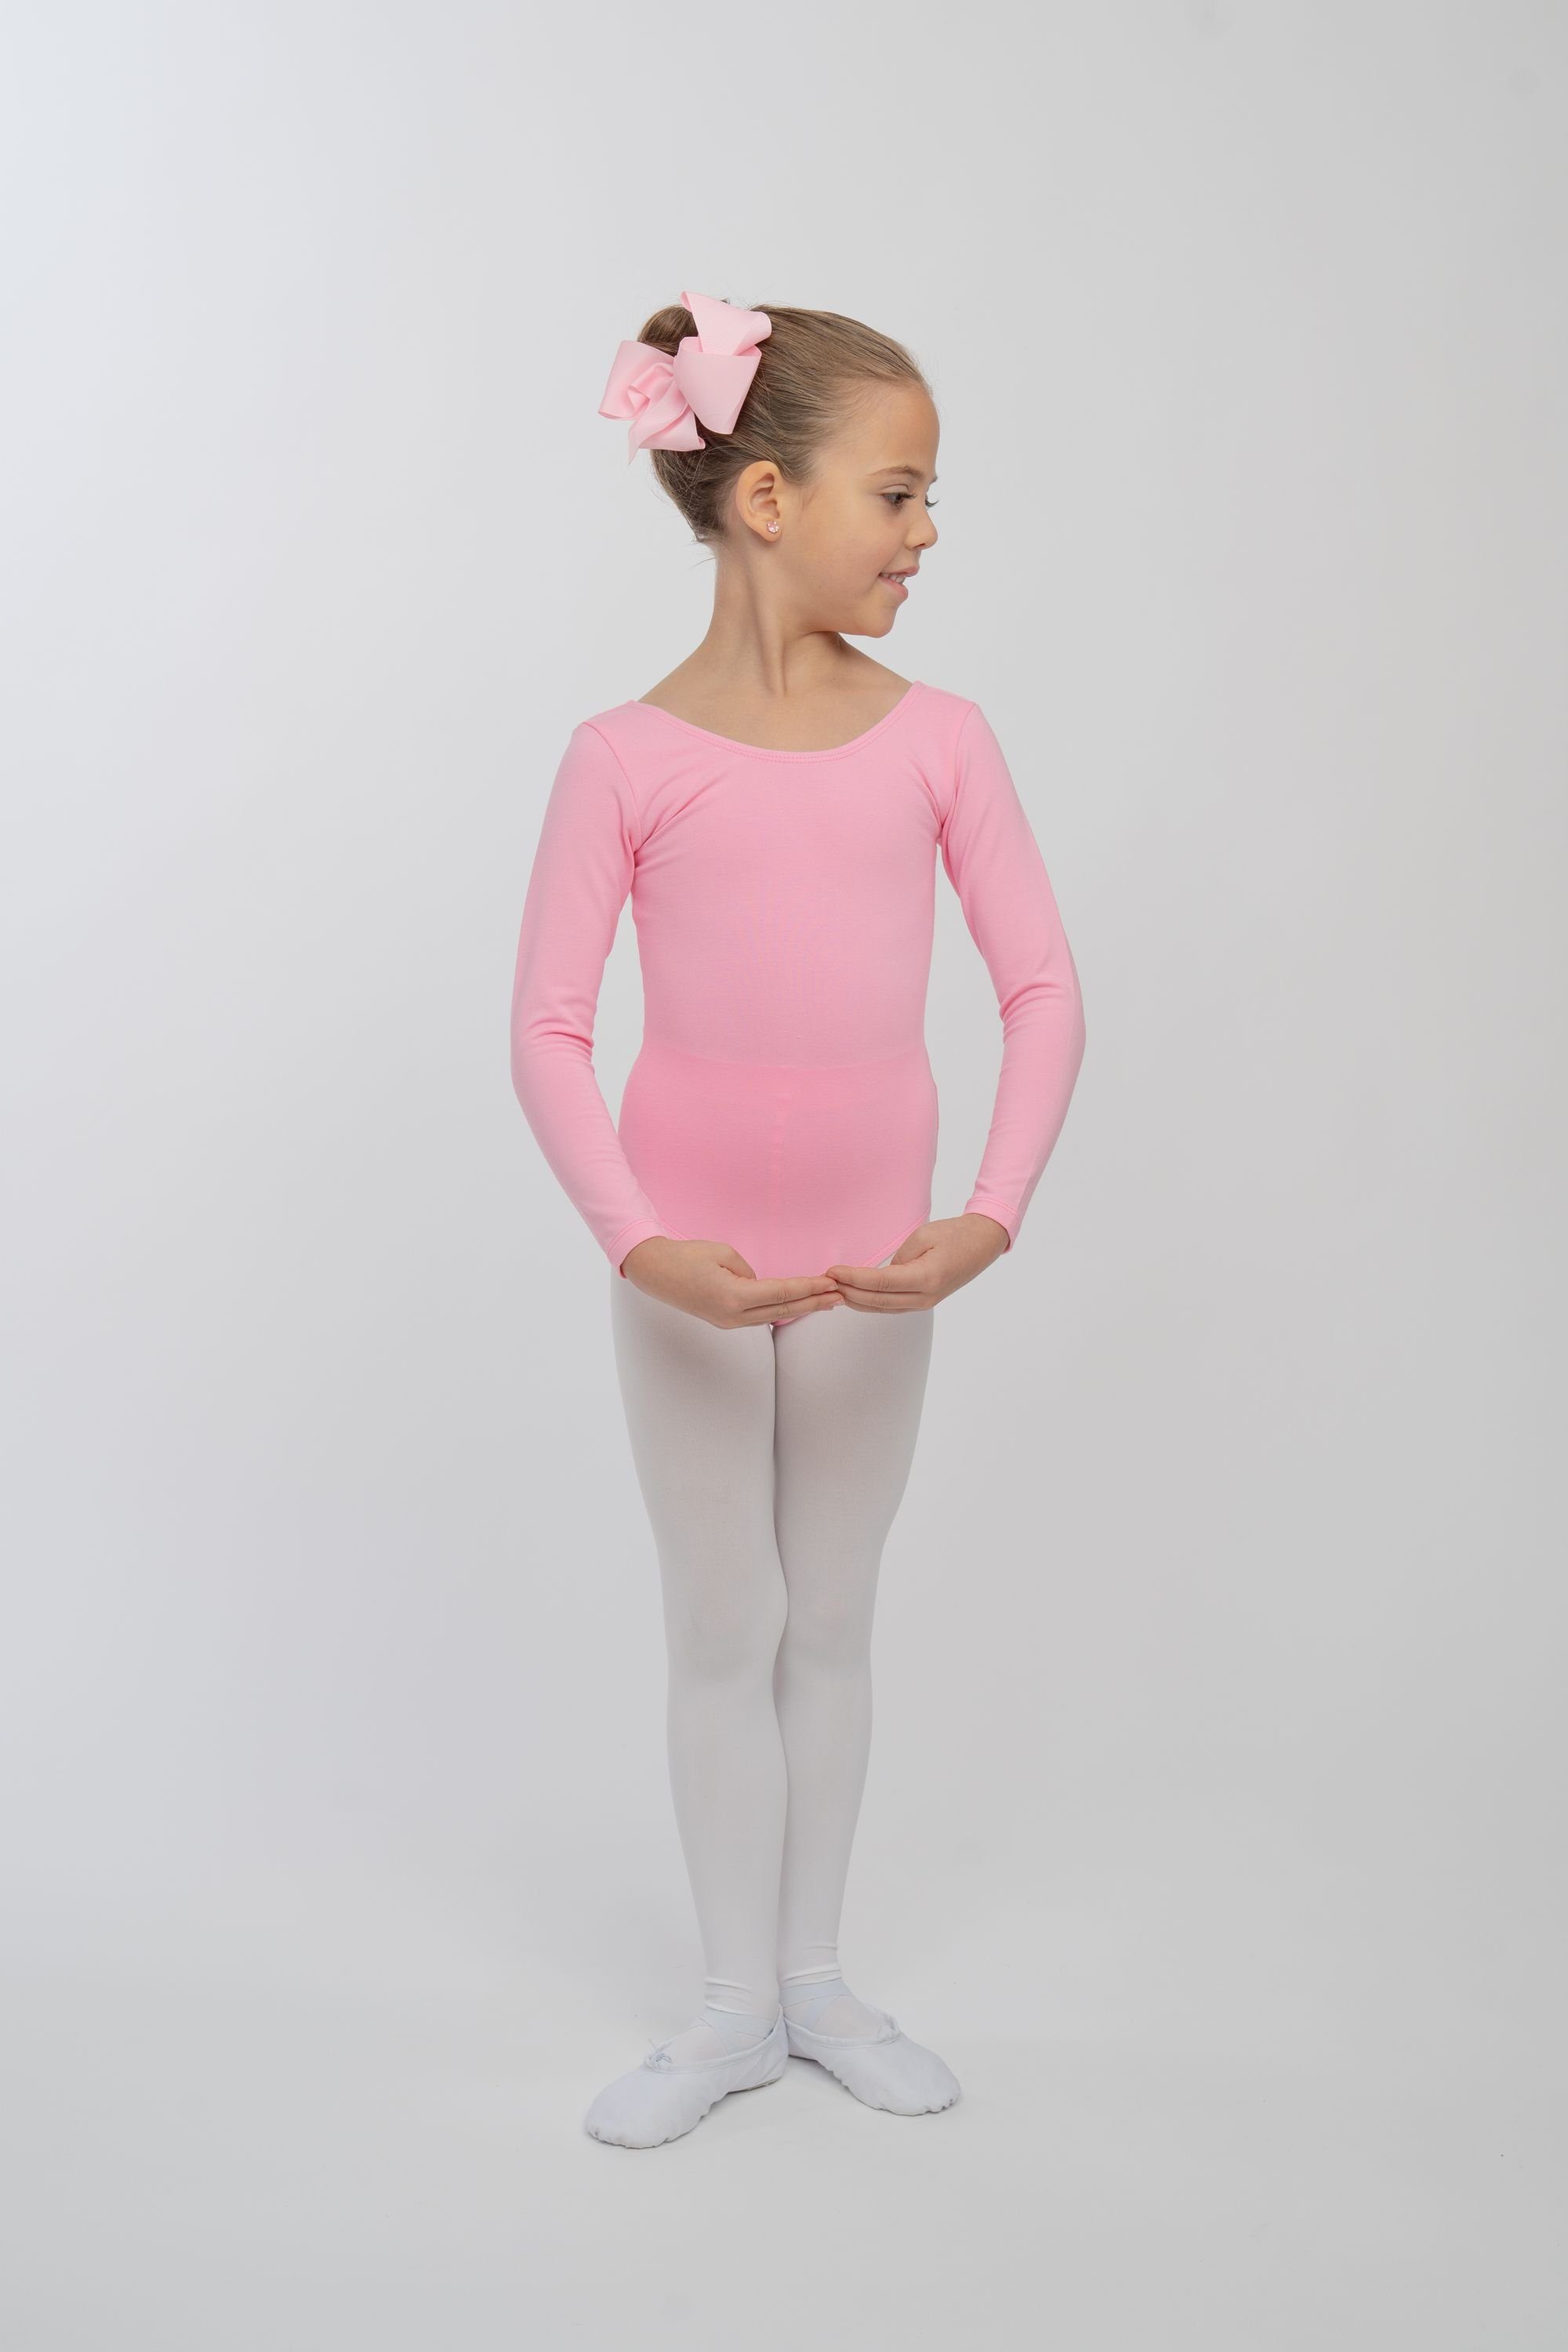 rosa tanzmuster Body Baumwollmischgewebe Trikot Ballettbody Ballett Langarm Kinder fürs aus weichem Lilly